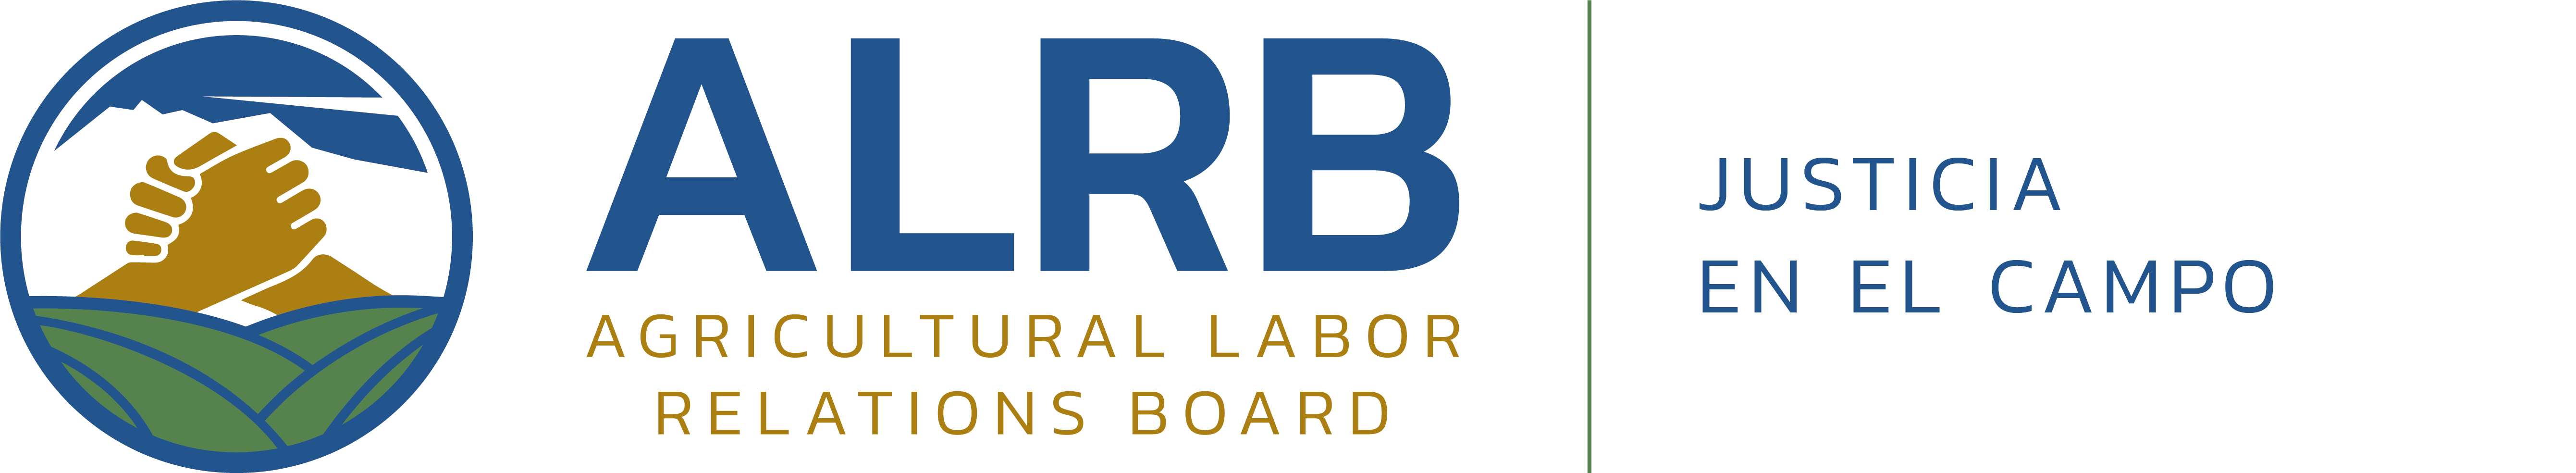 ALRB - Agricultural Labor Relations Board, Justicia en el Campo